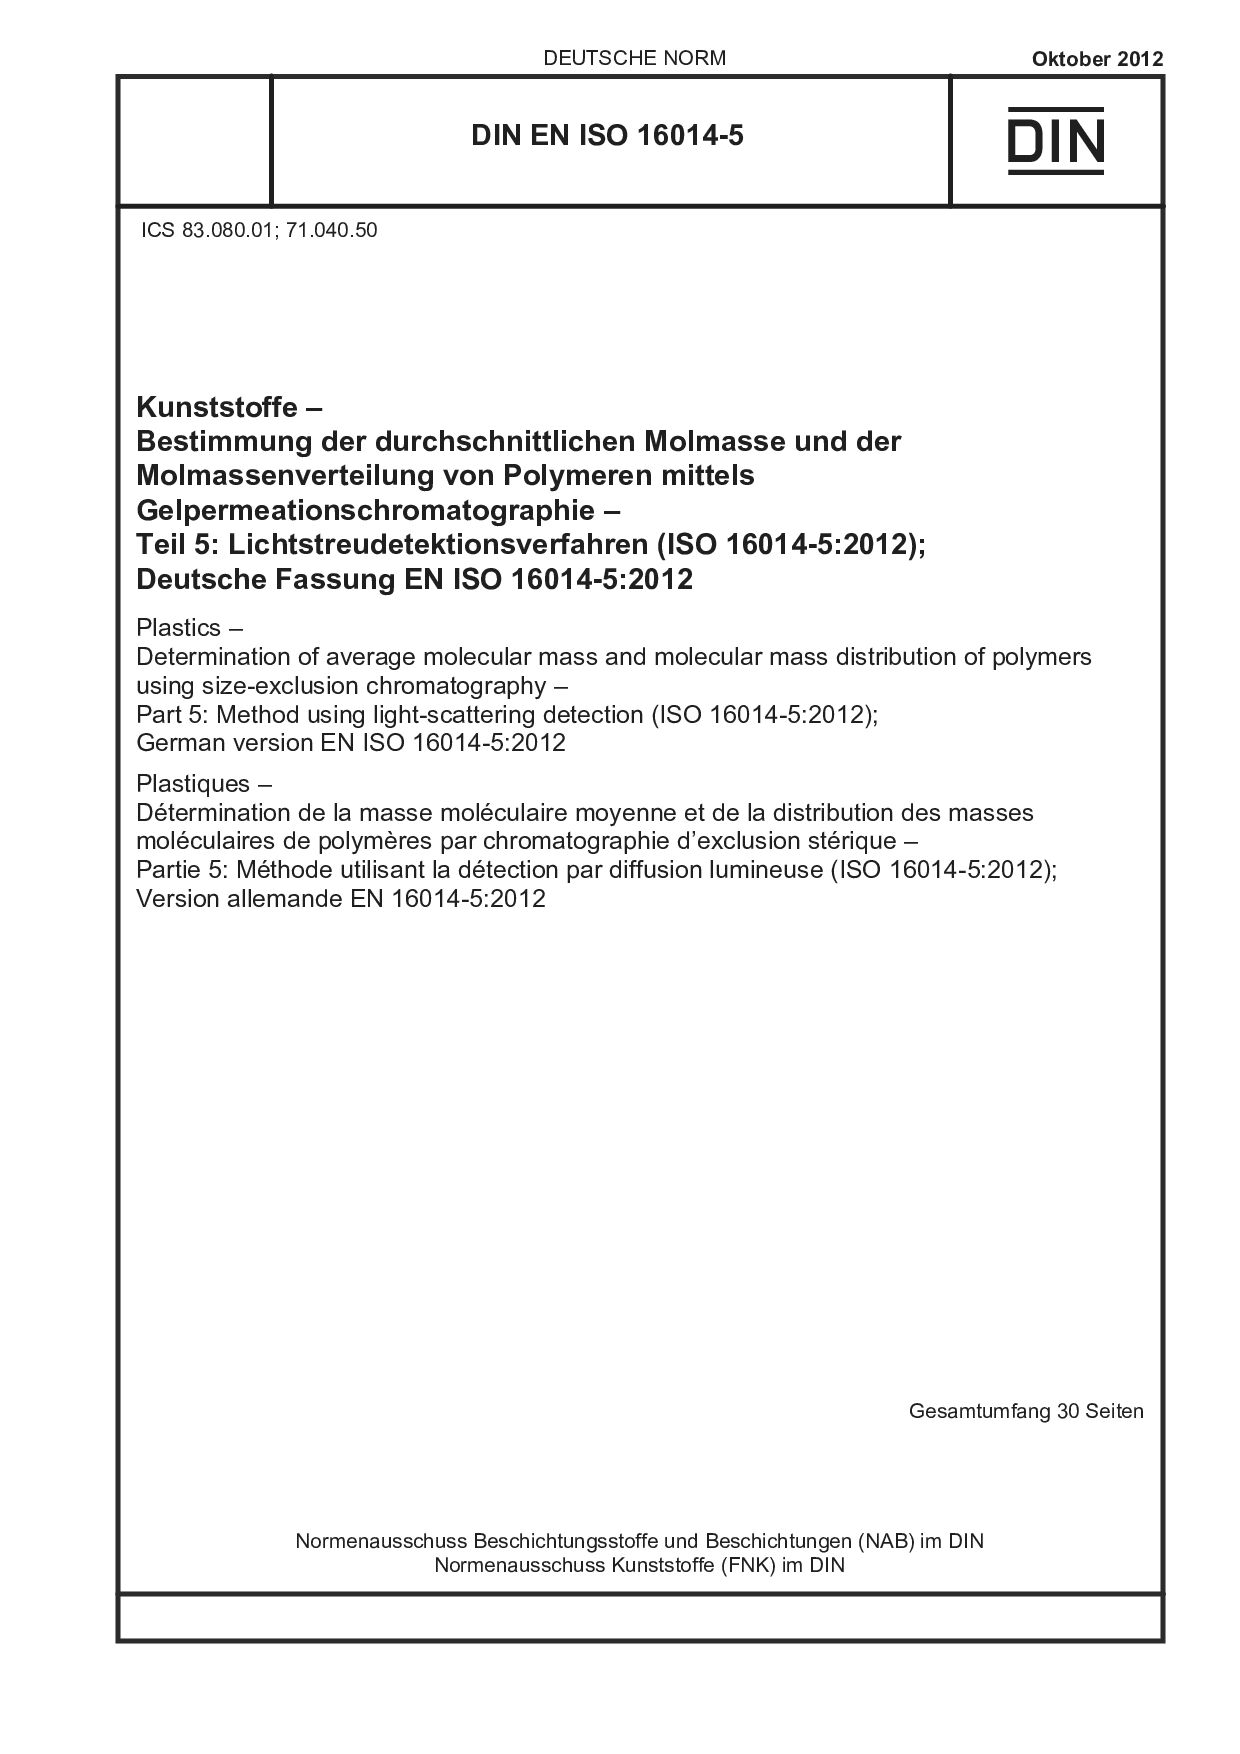 DIN EN ISO 16014-5:2012